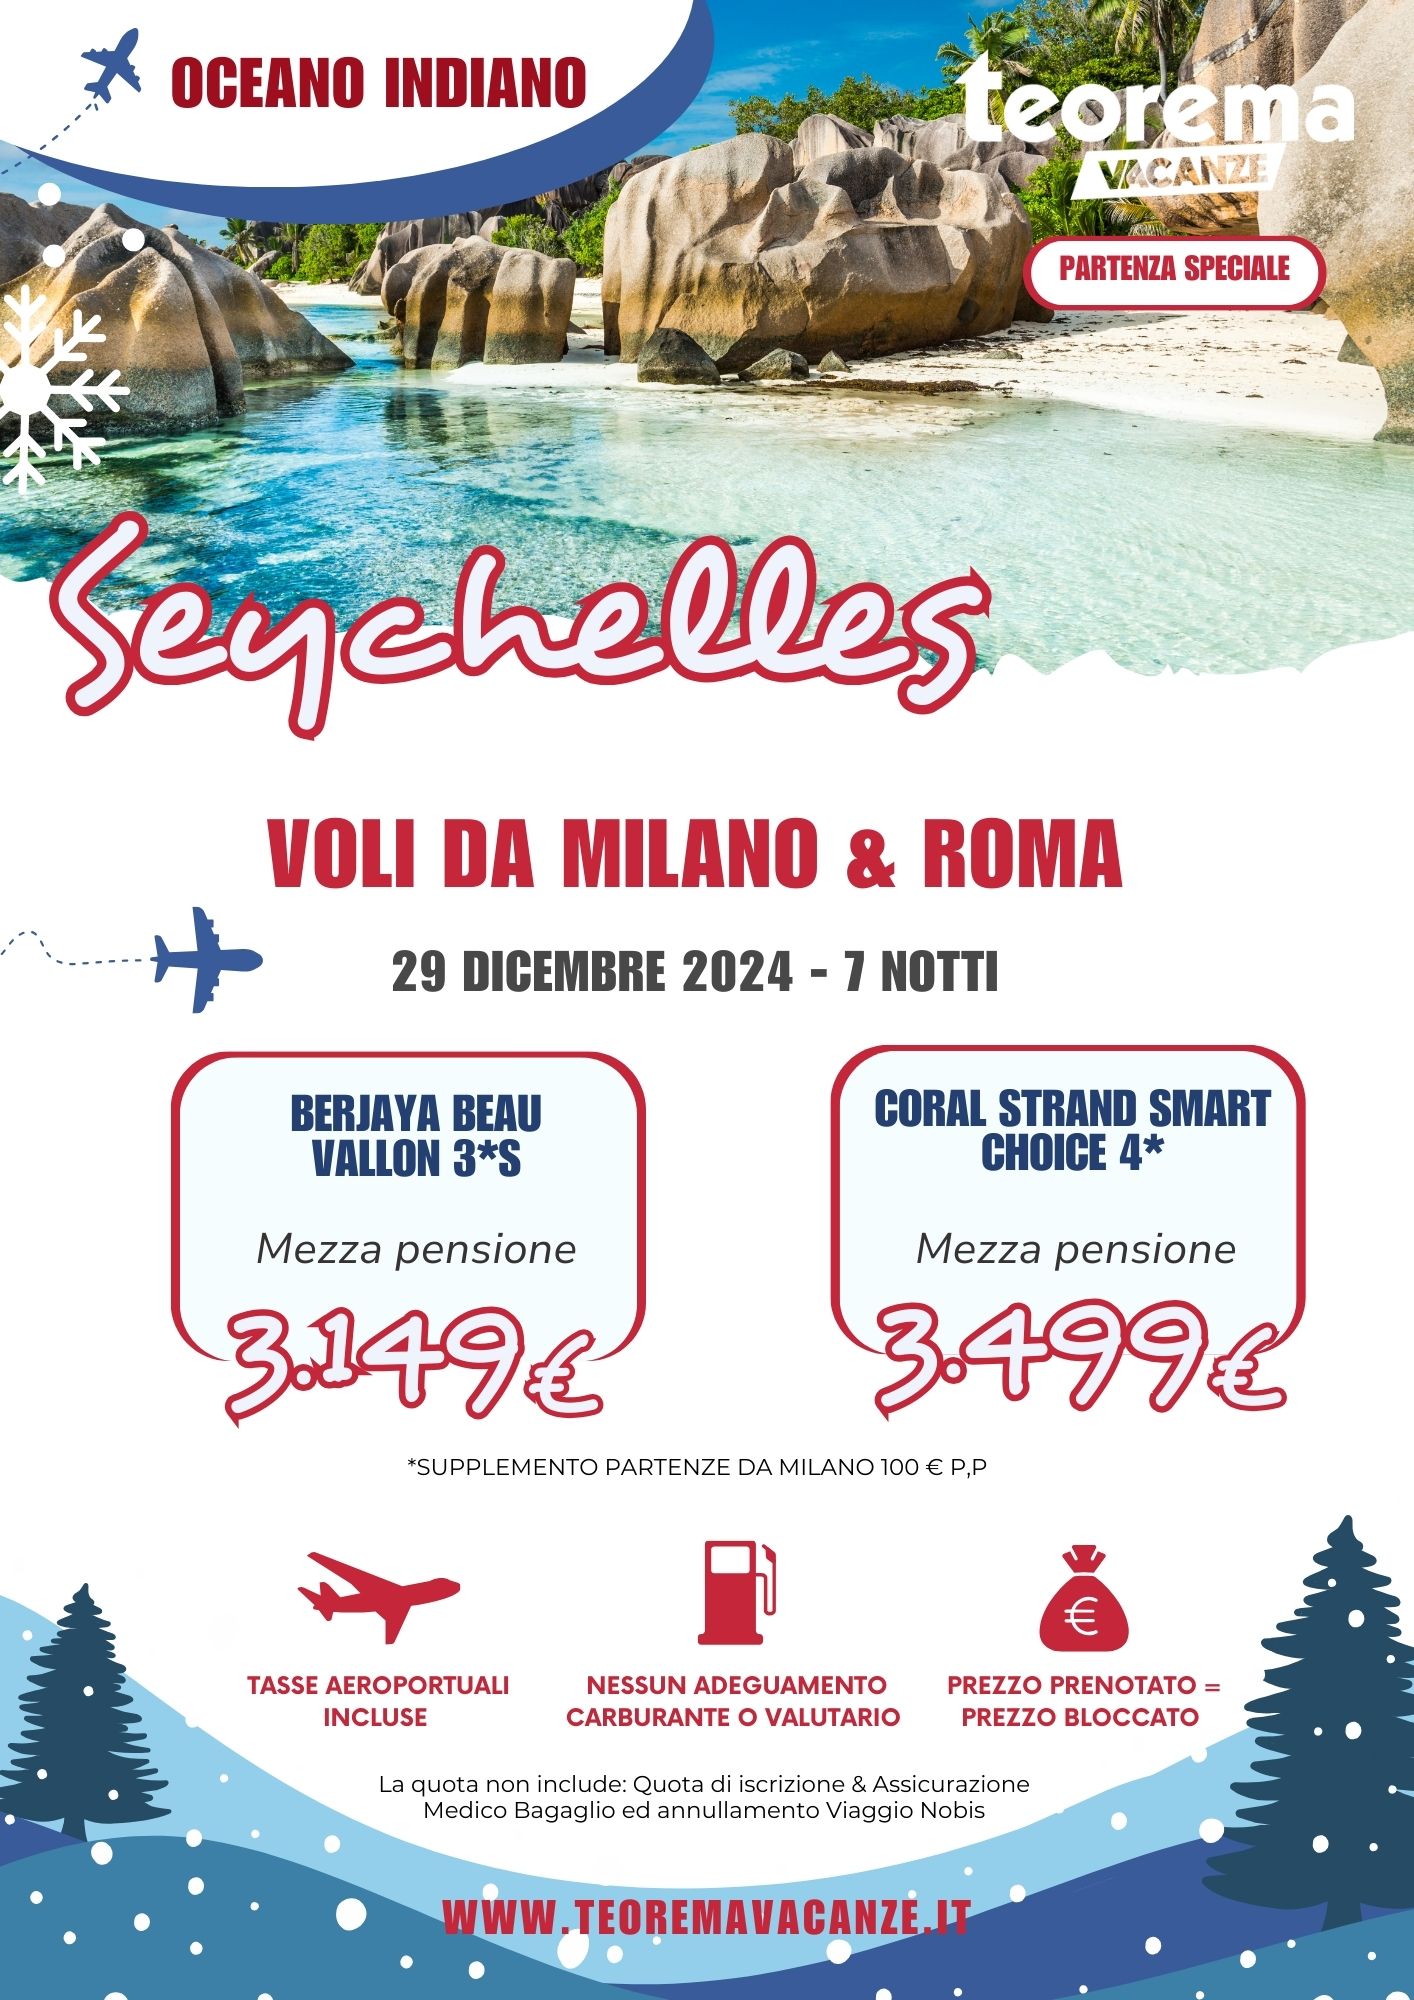 TEOREMA WINTER 2025 - SEYCHELLES DA MILANO & ROMA